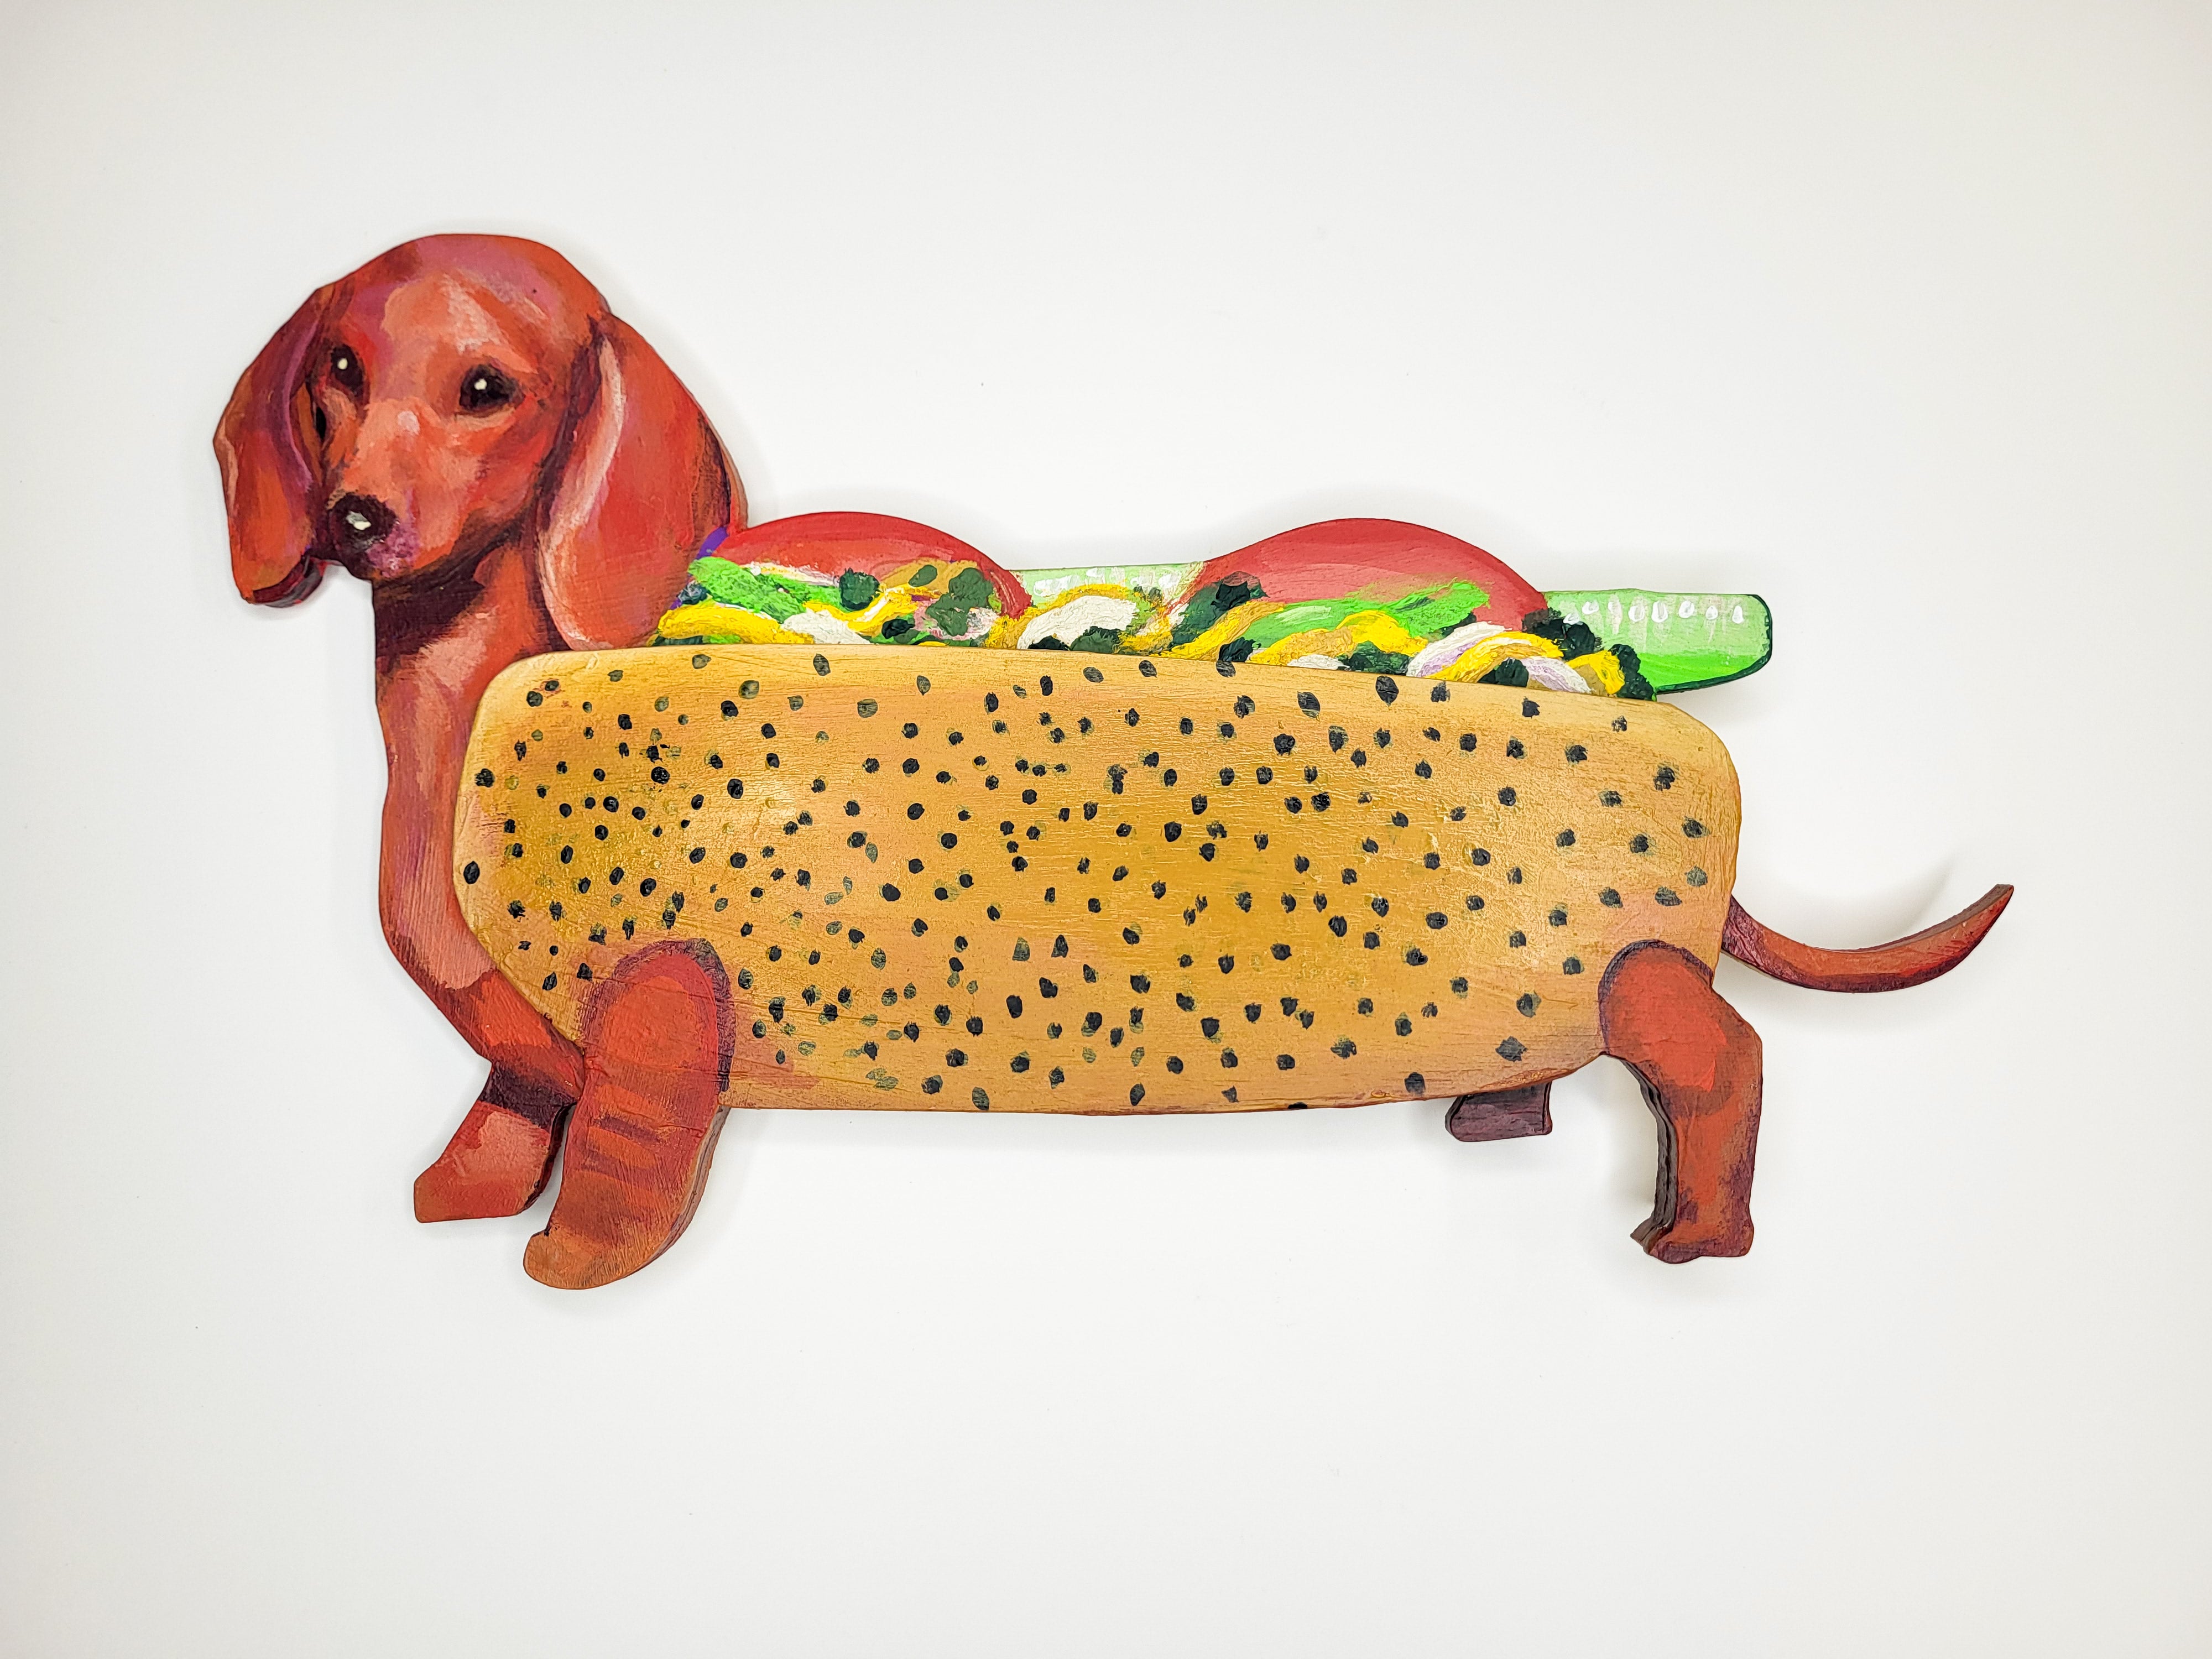 "That's A Tasty Wiener!" by CZR PRZ